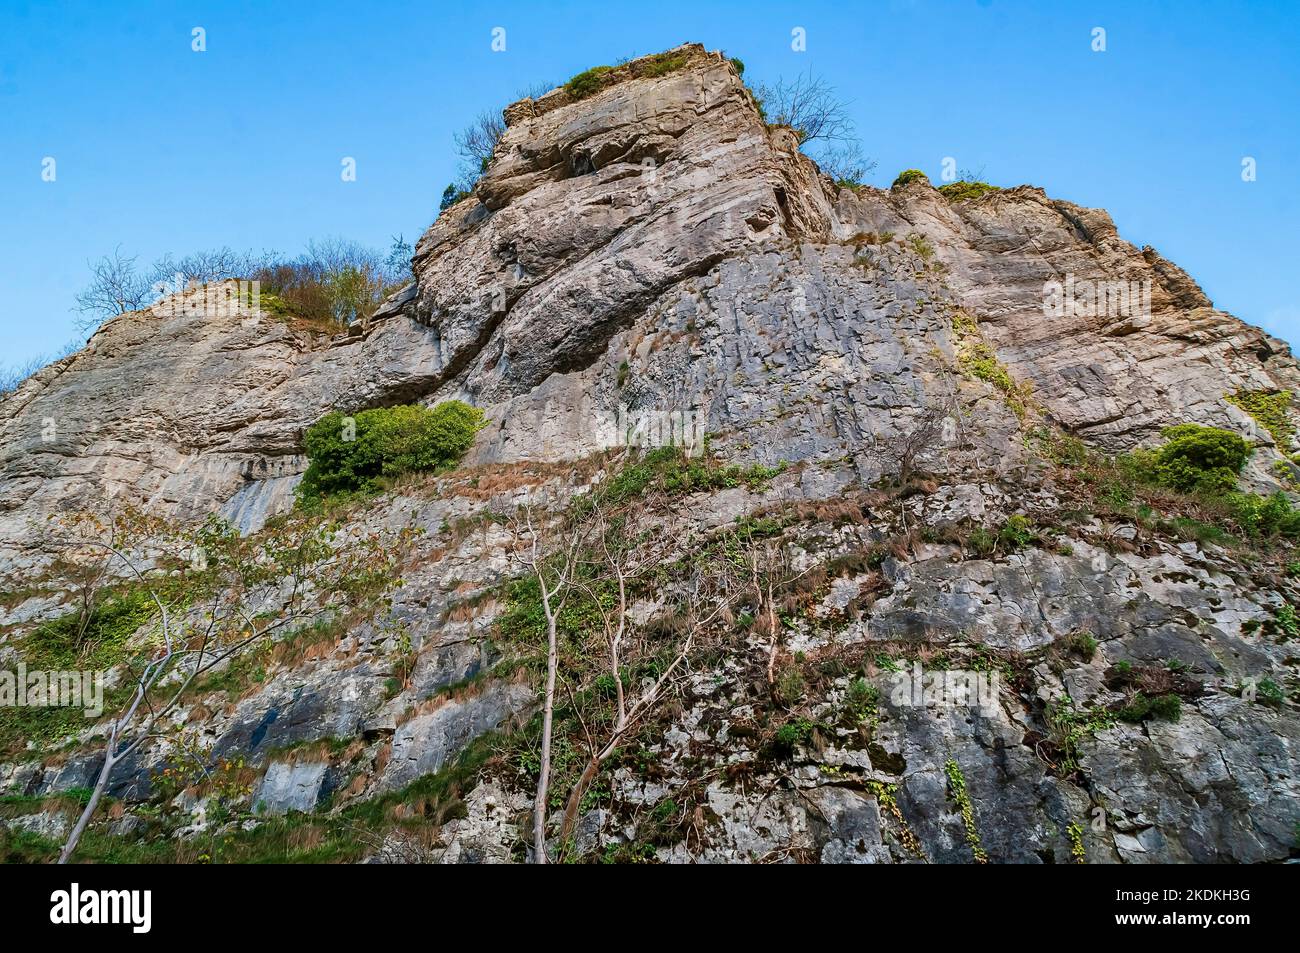 De hautes falaises de calcaire, partiellement en pleine carrière, avec entrées de grottes et entrées artificielles pour les mines de plomb, à Middleton Dale, Stoney Middleton, Peak District. Banque D'Images